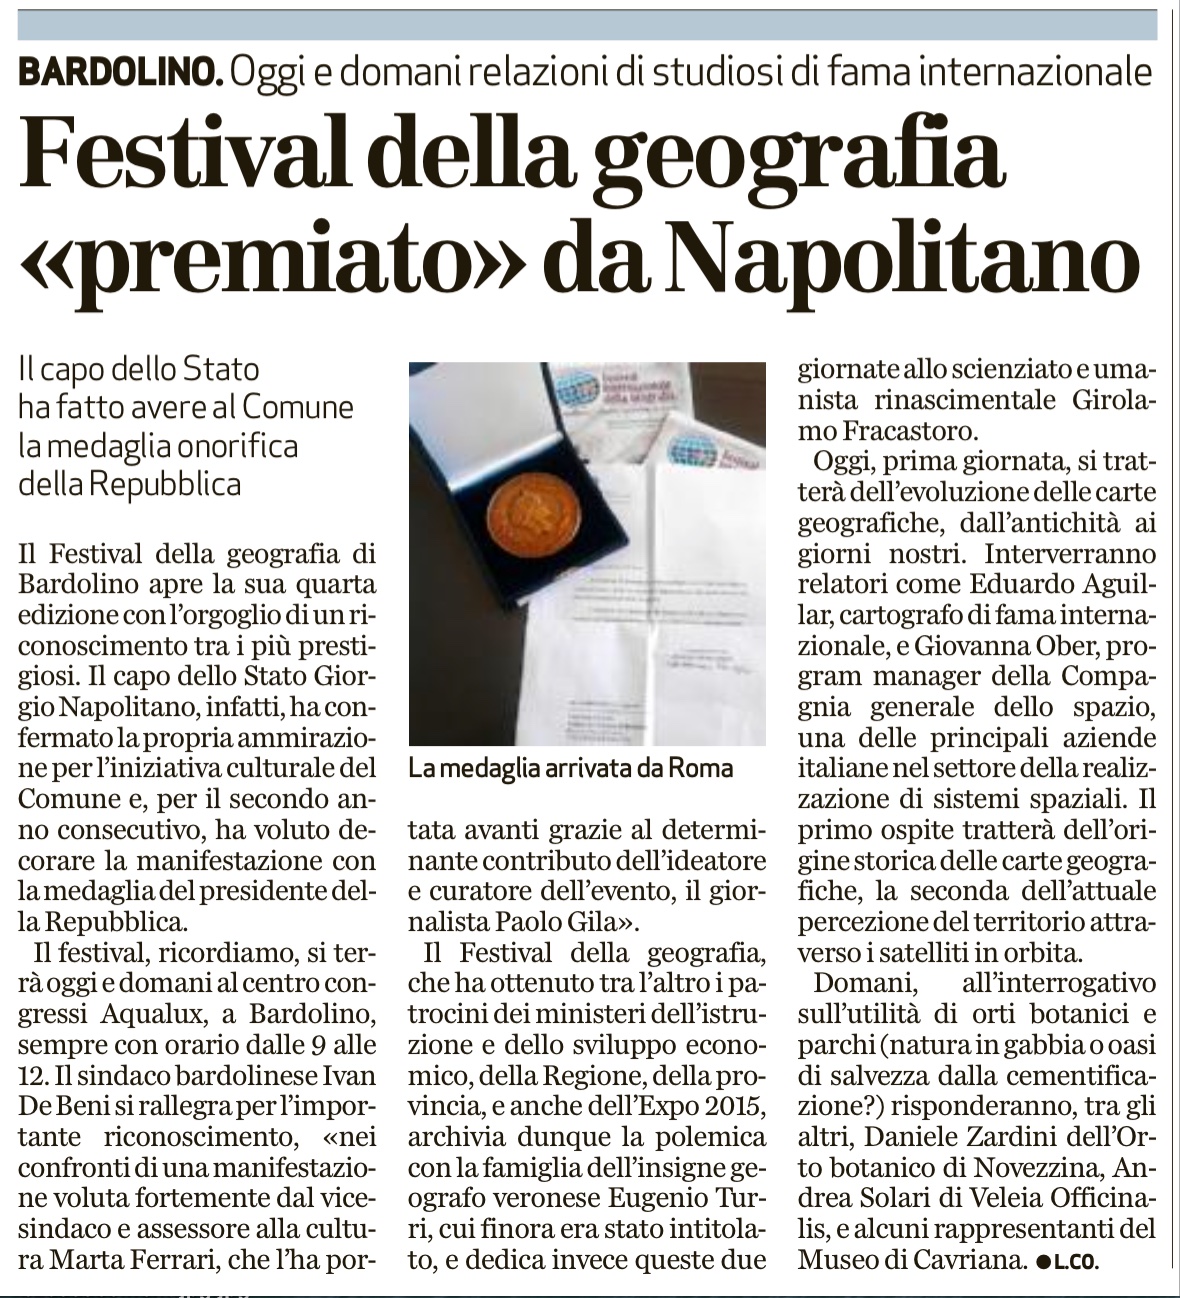 L’Arena: 24.10.2014 Festival della geografia “premiato” da Napolitano